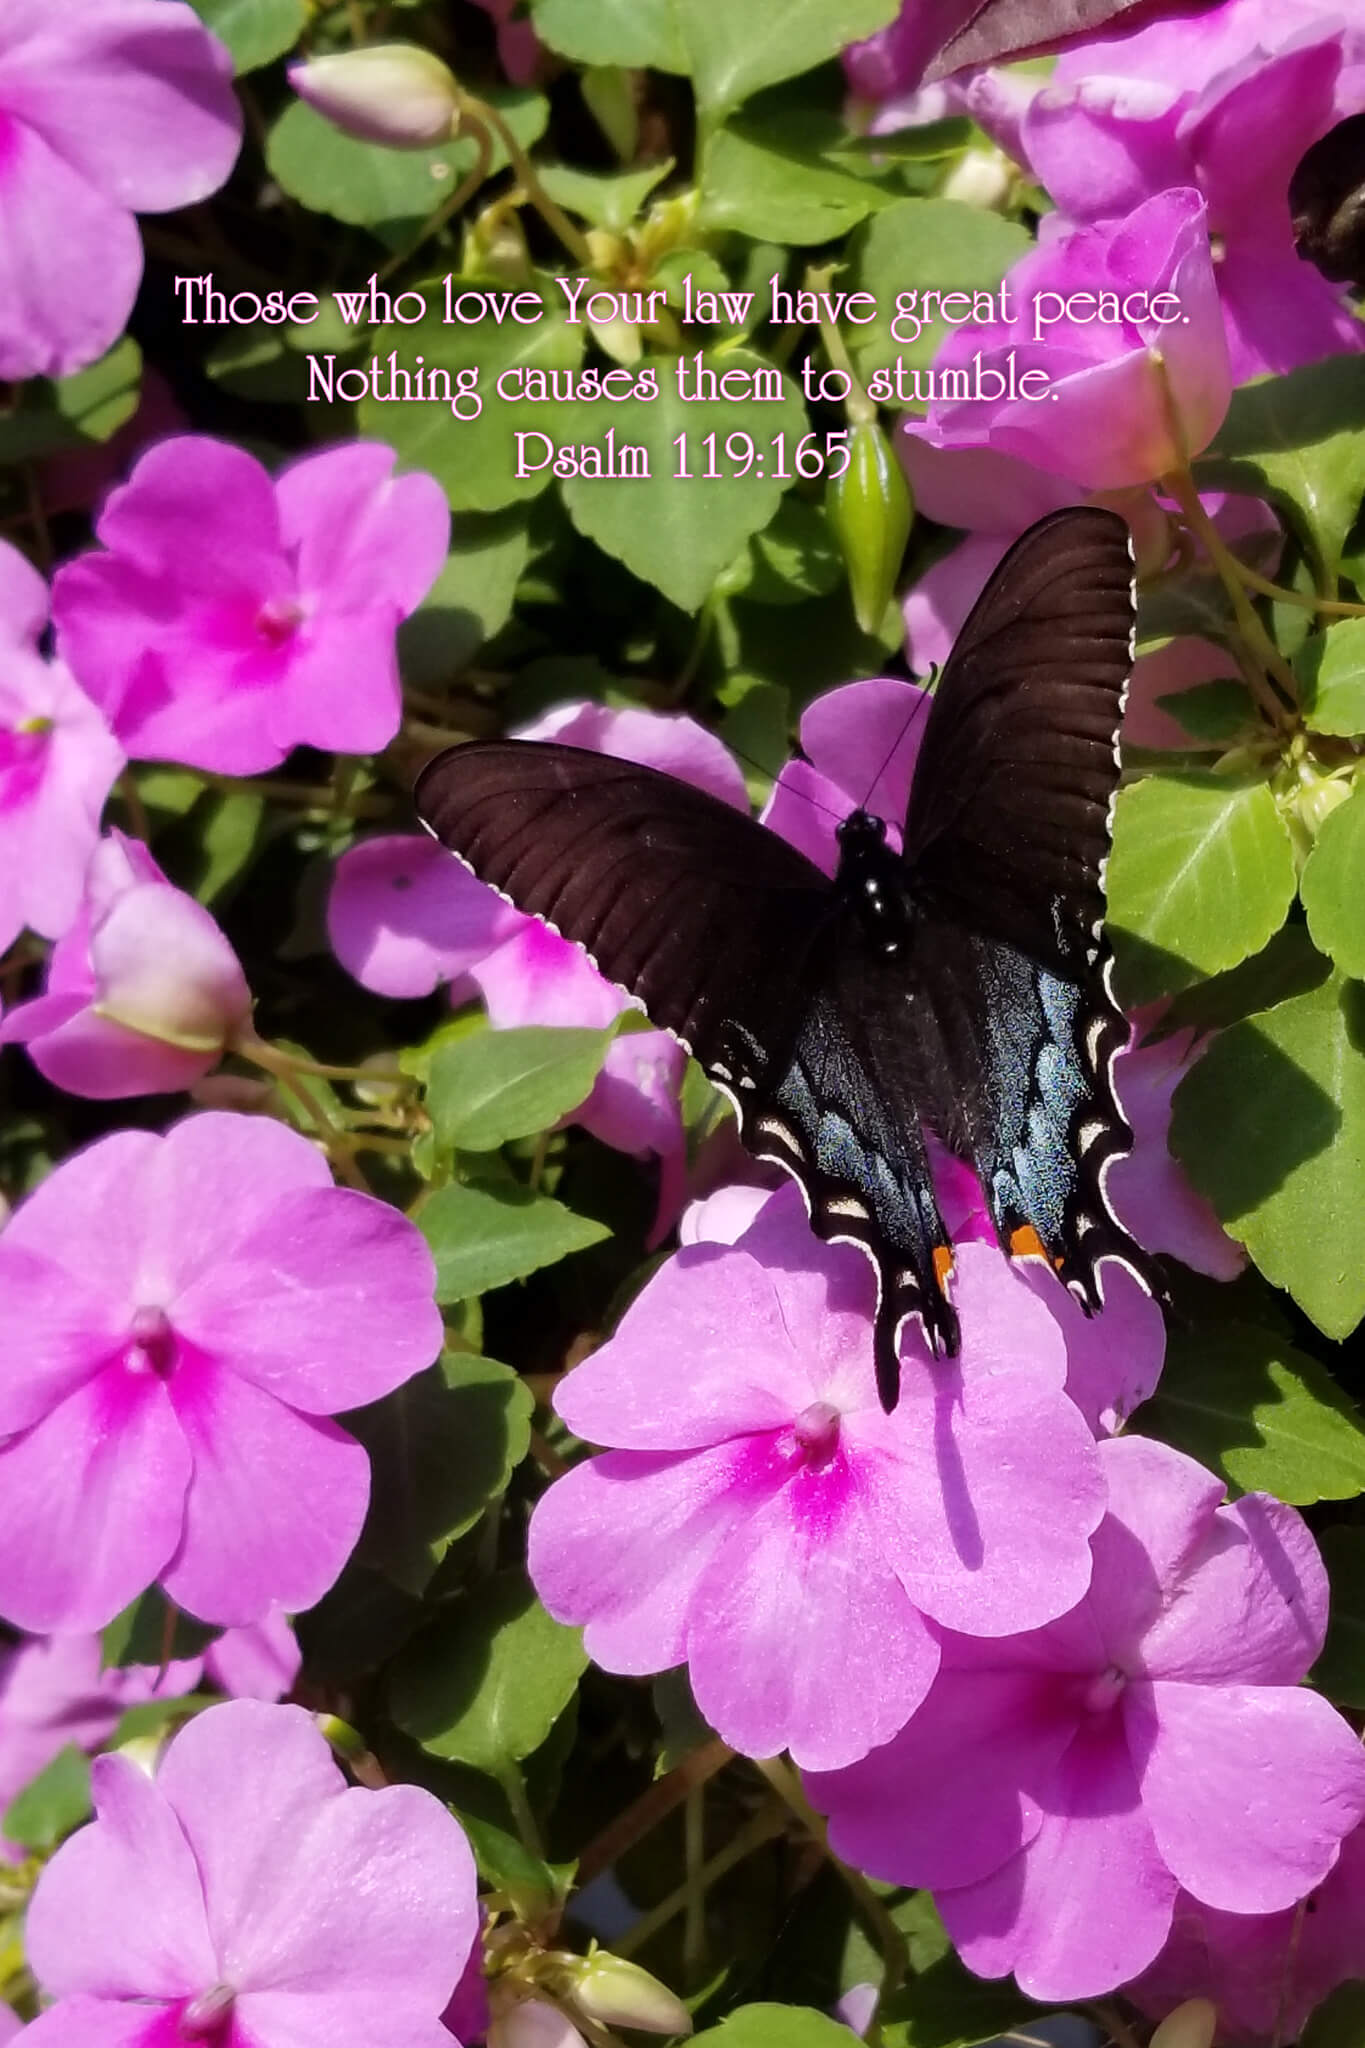 Psalm 119:165 Butterfly on Impatiens